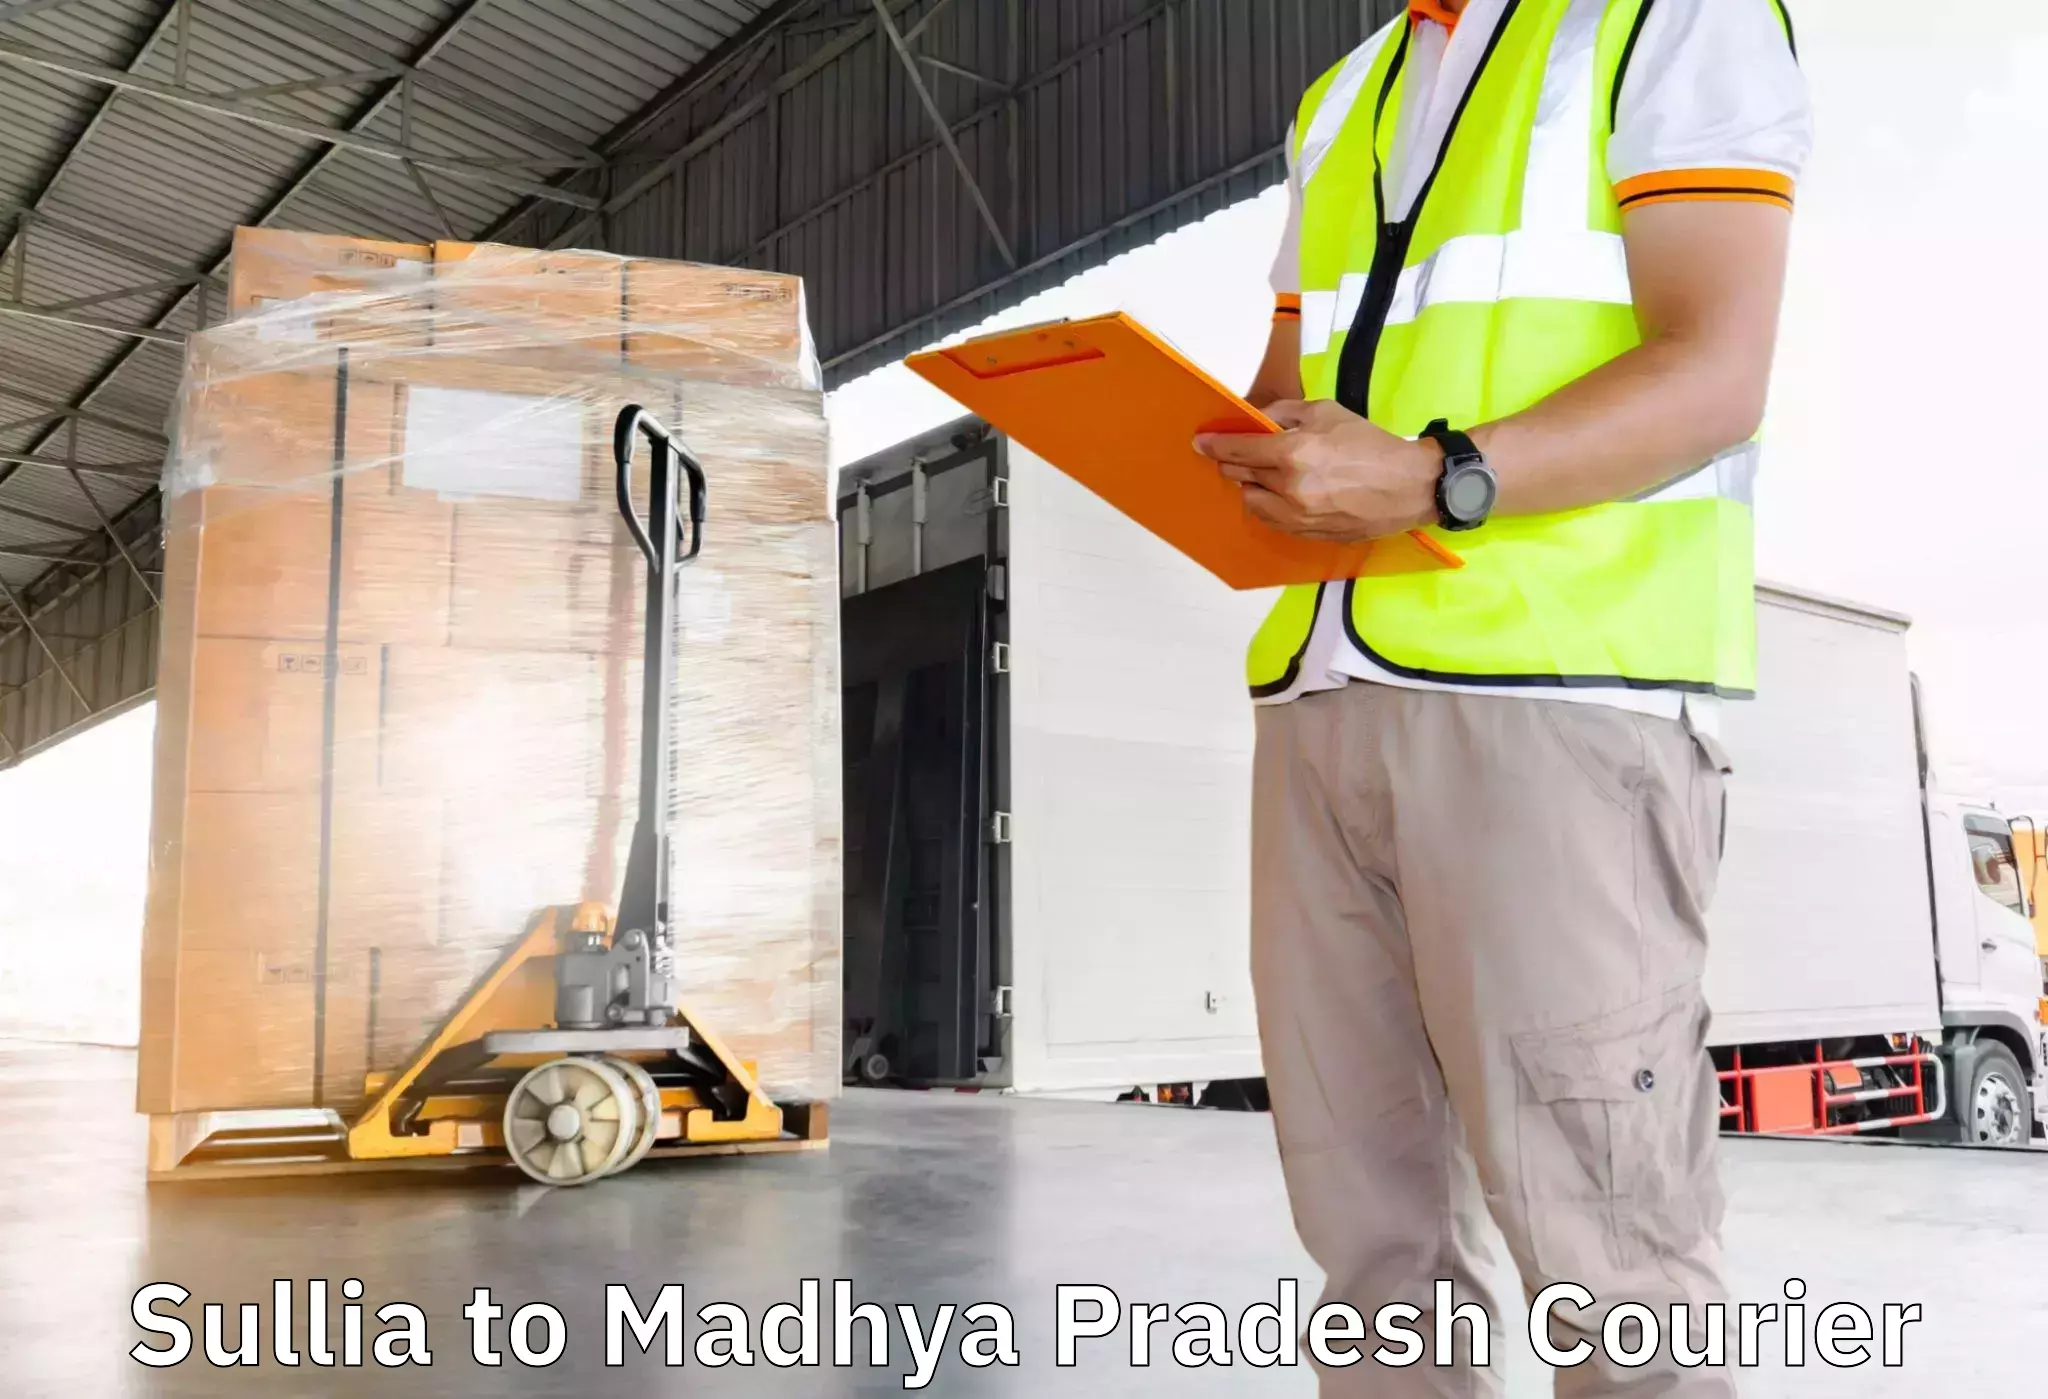 Furniture transport professionals Sullia to IIT Indore